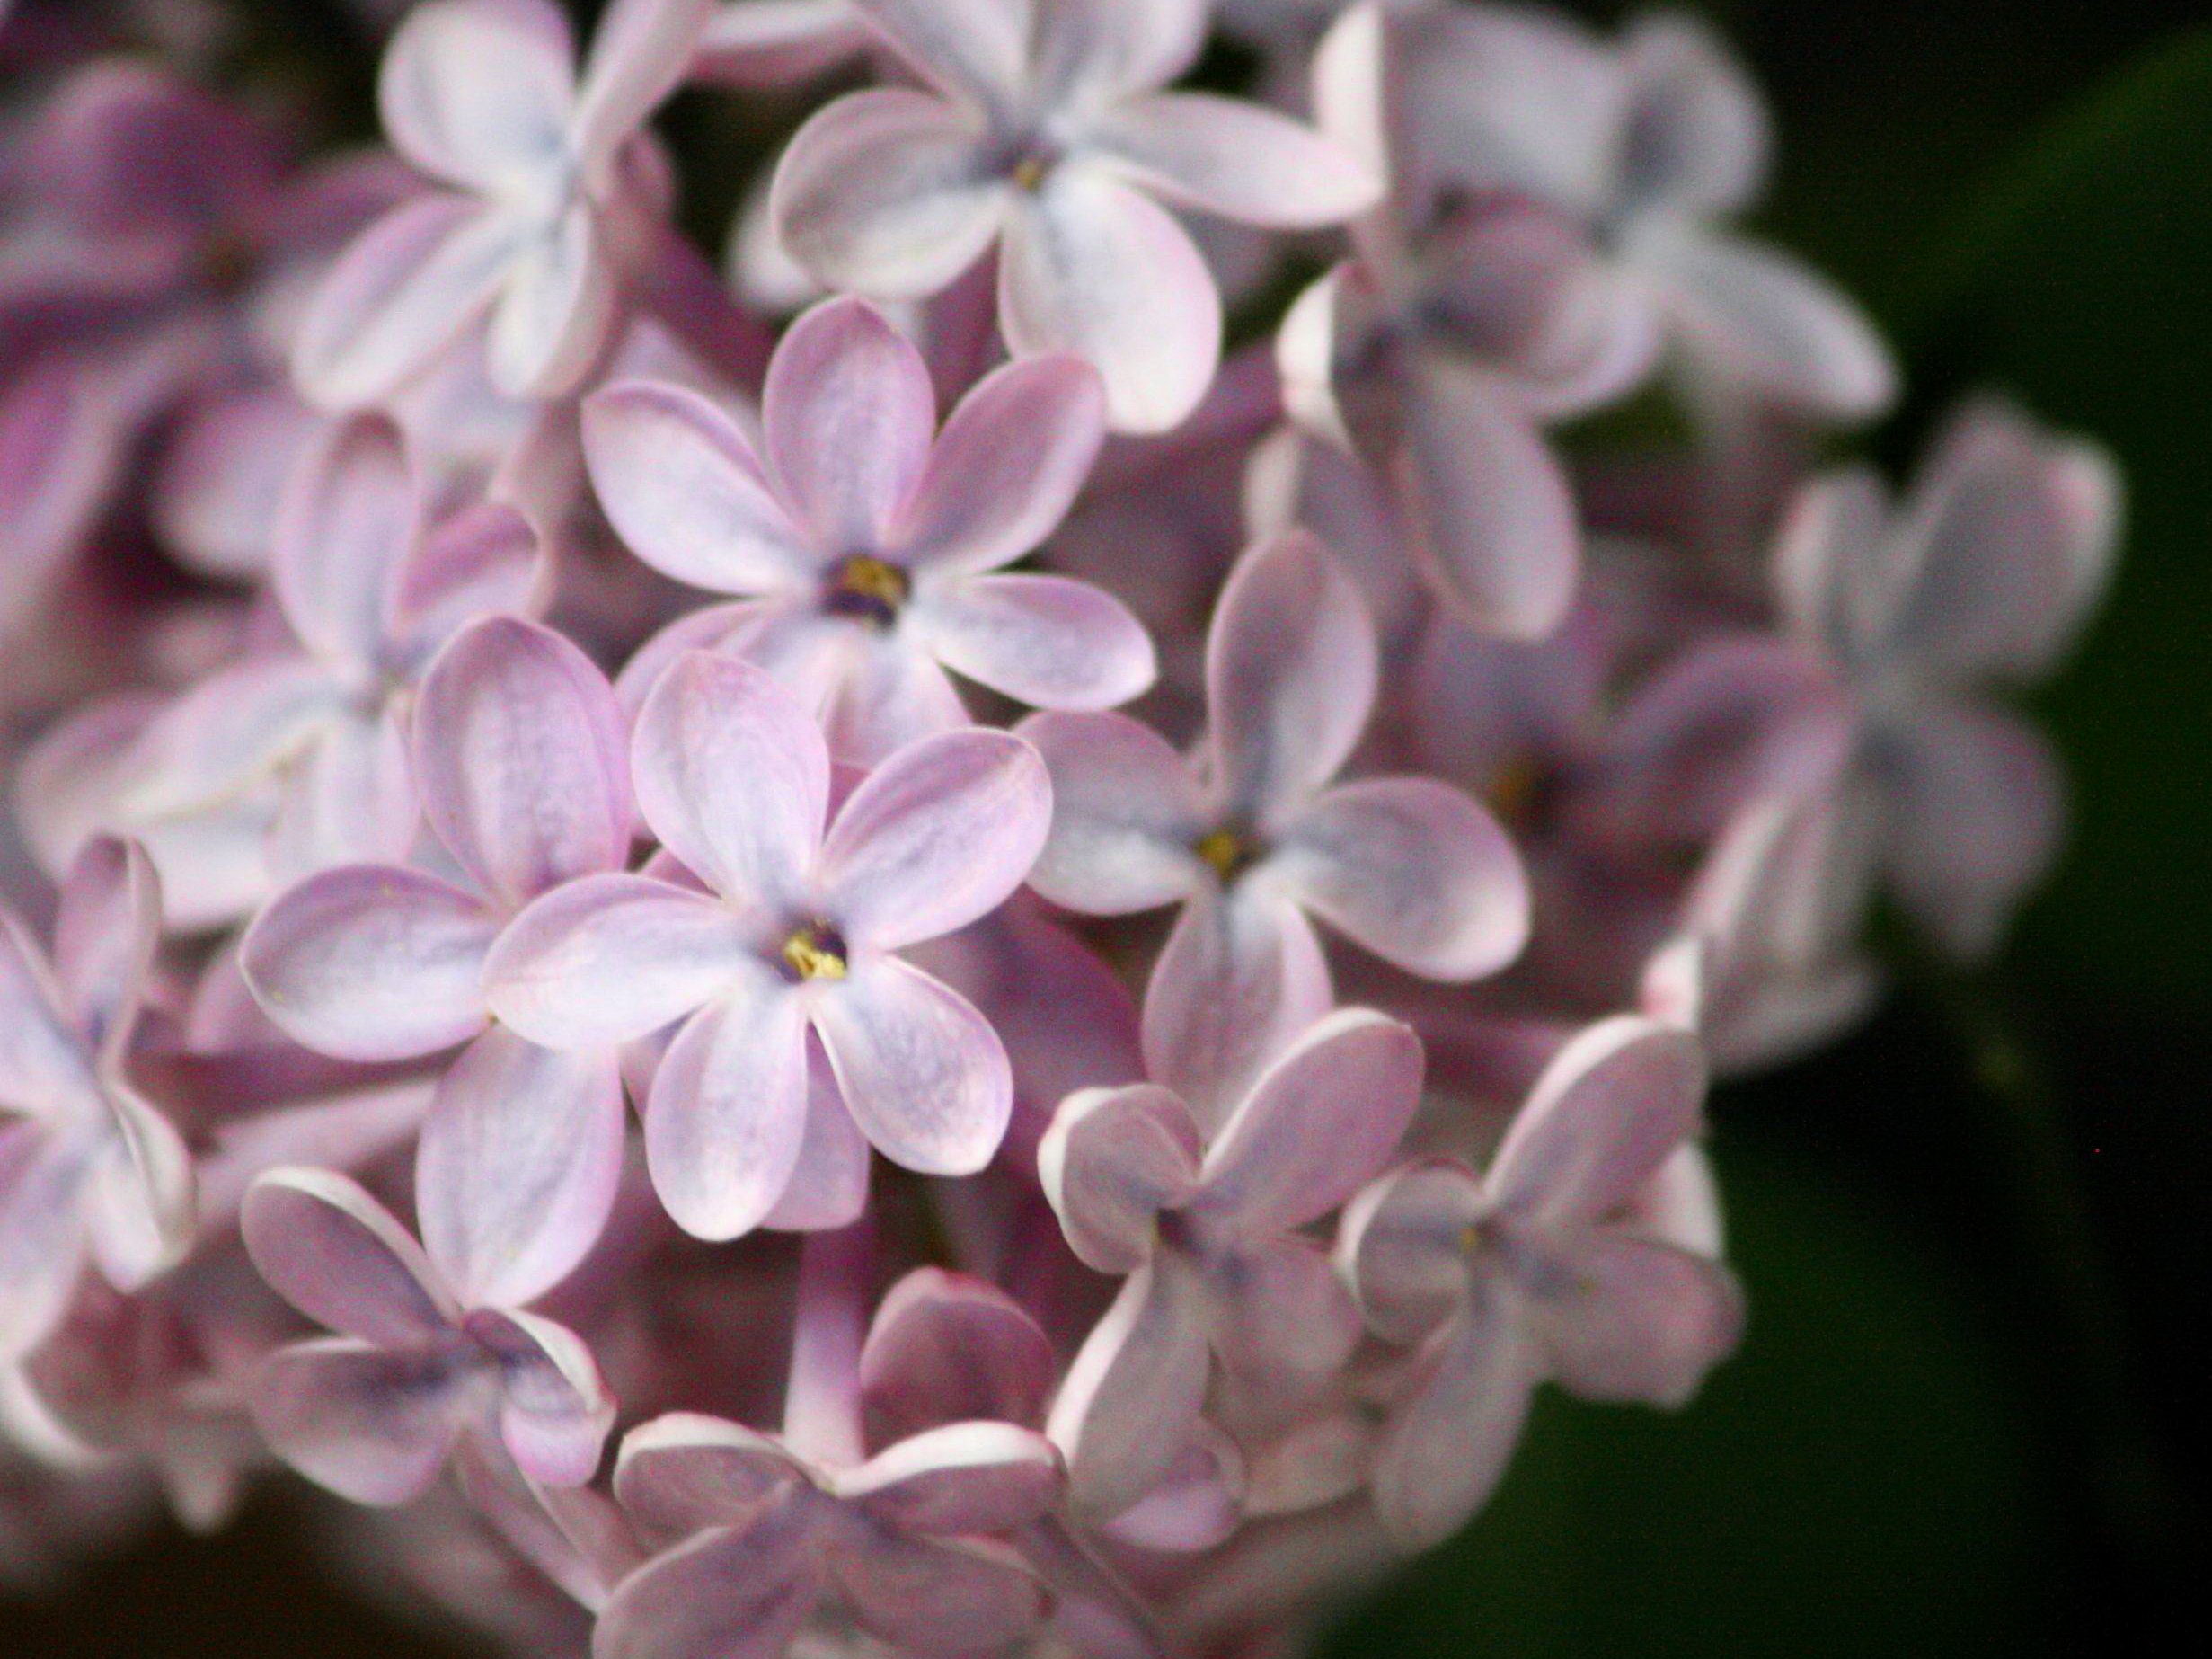 Image libre: pourpre pâle couleur, lilas, fleurs